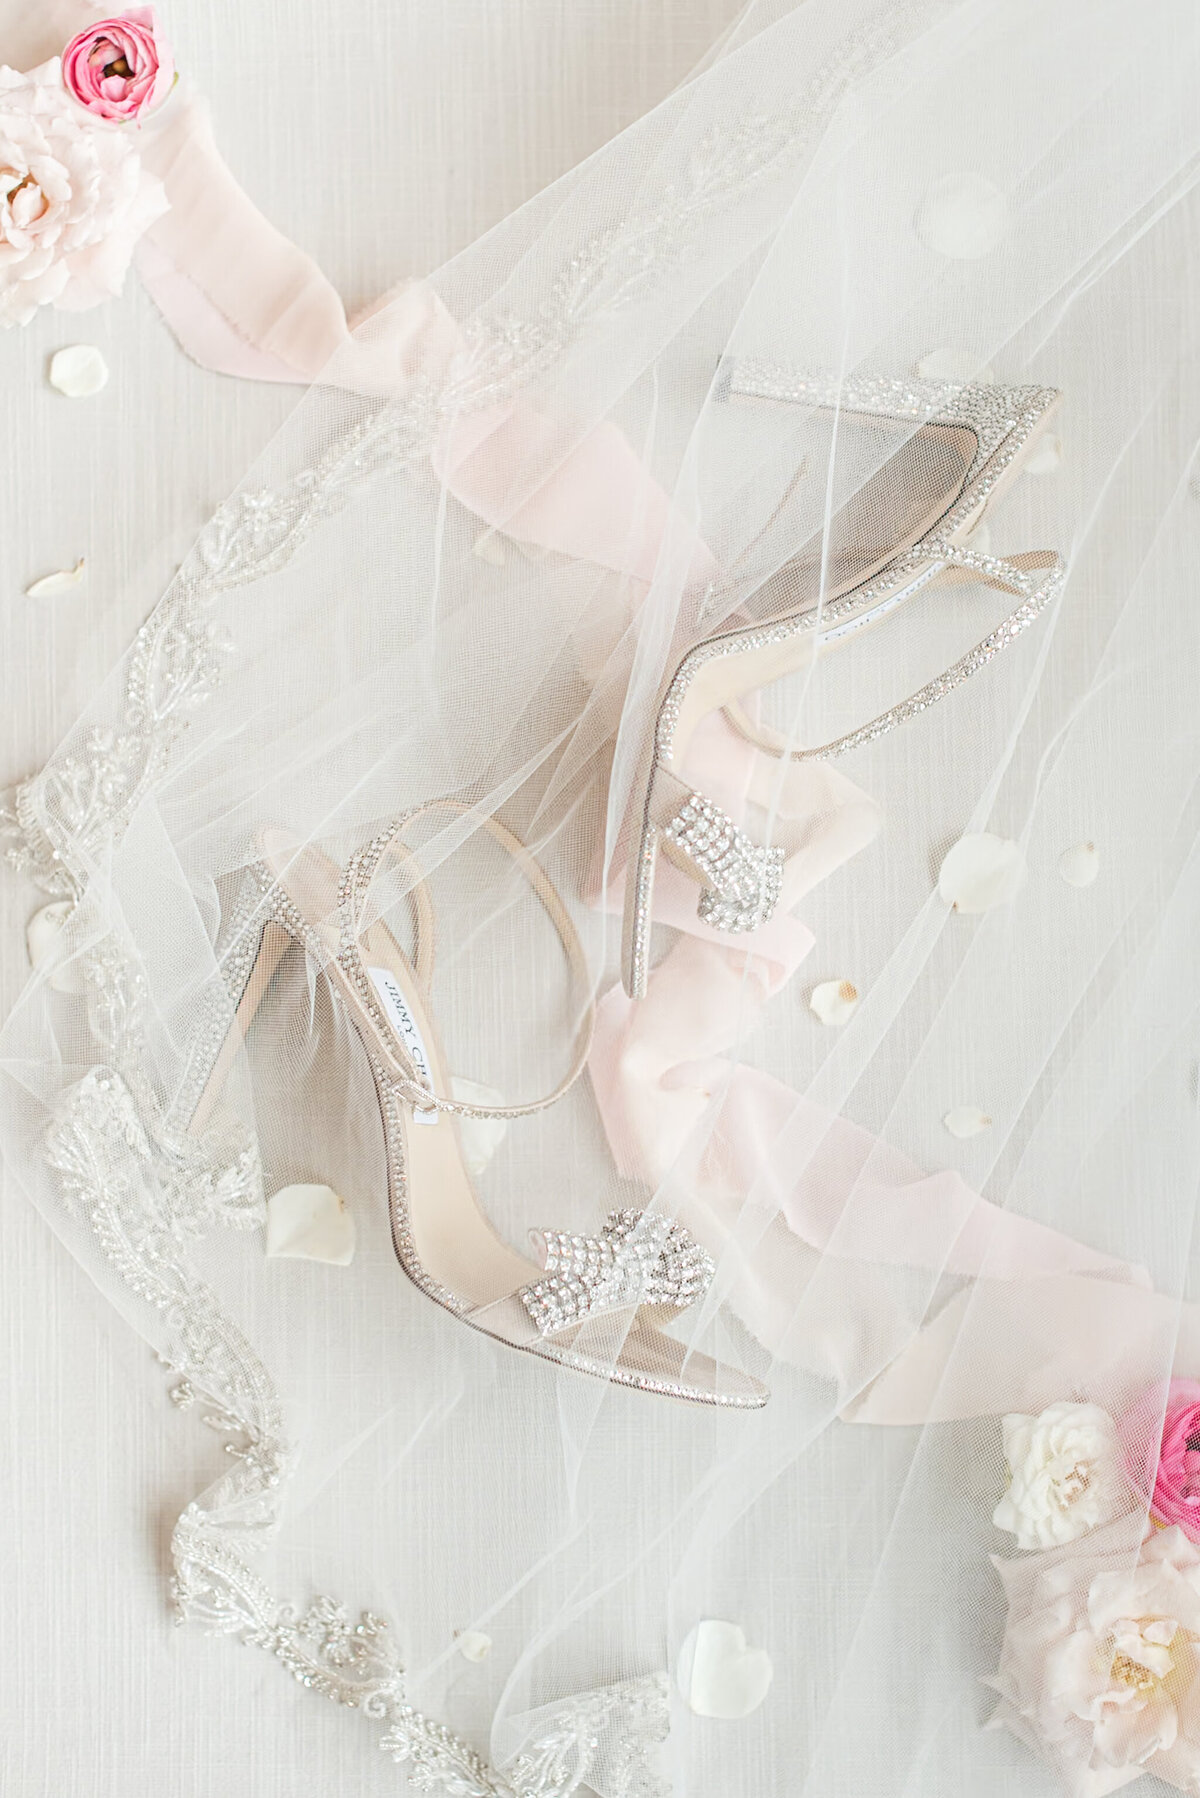 rhinestone bridal shoes under embellished veil